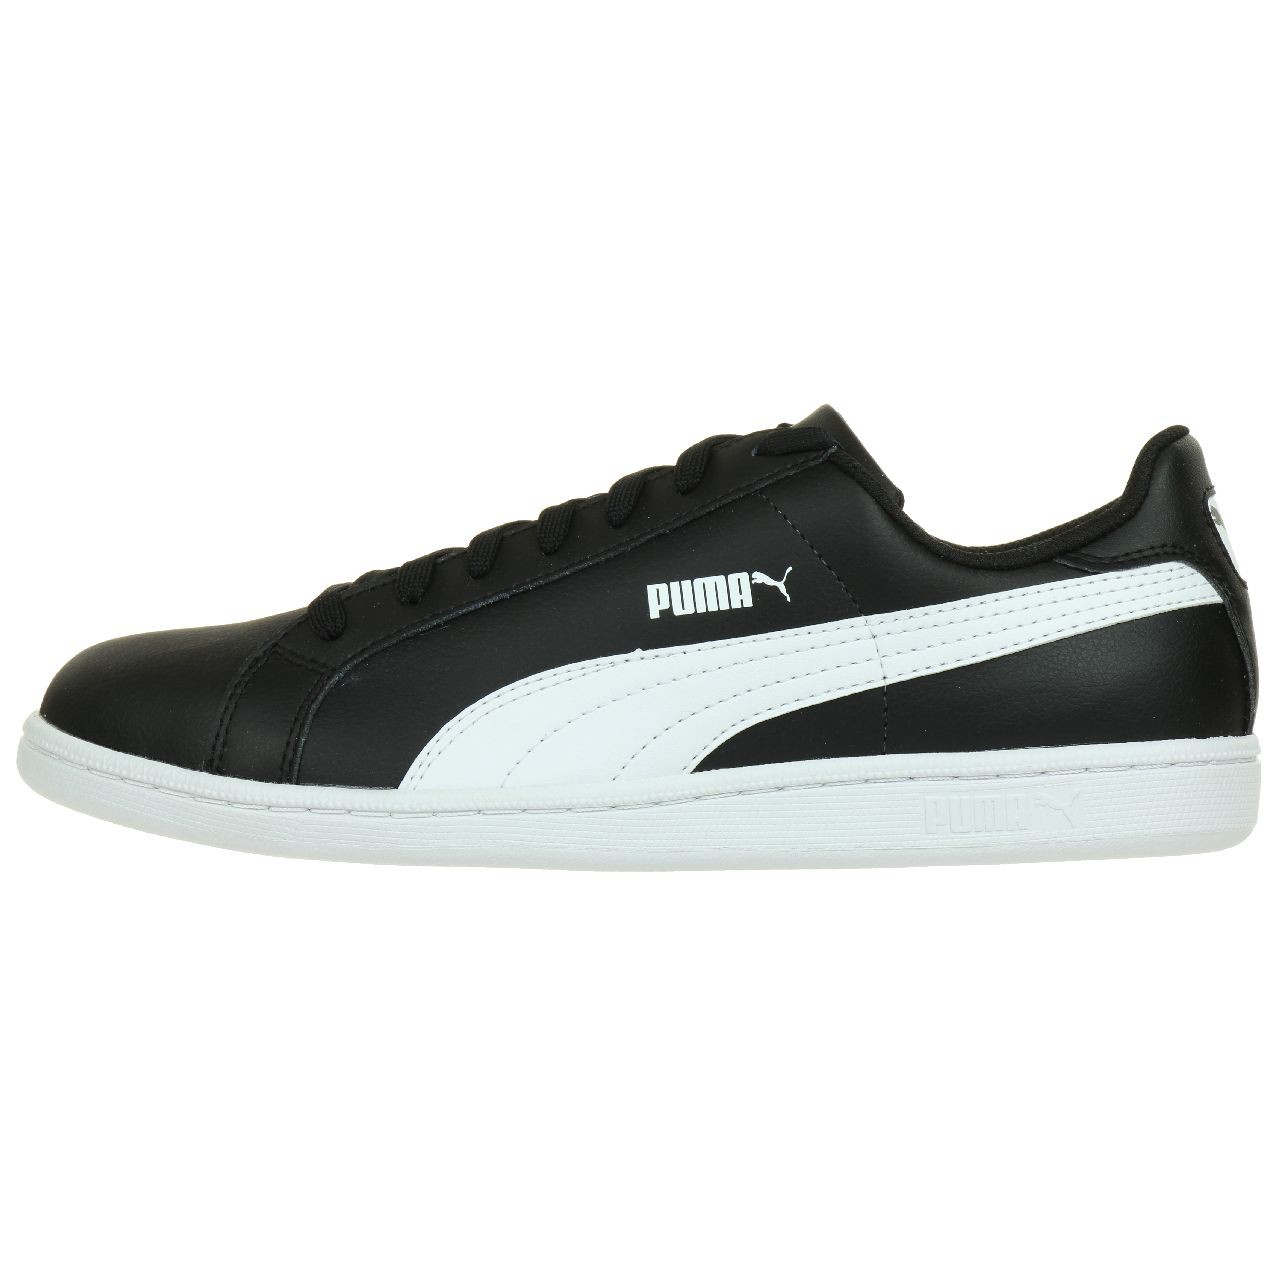 Puma Smash L Herren Sneaker Schuhe Leder schwarz 356722 14